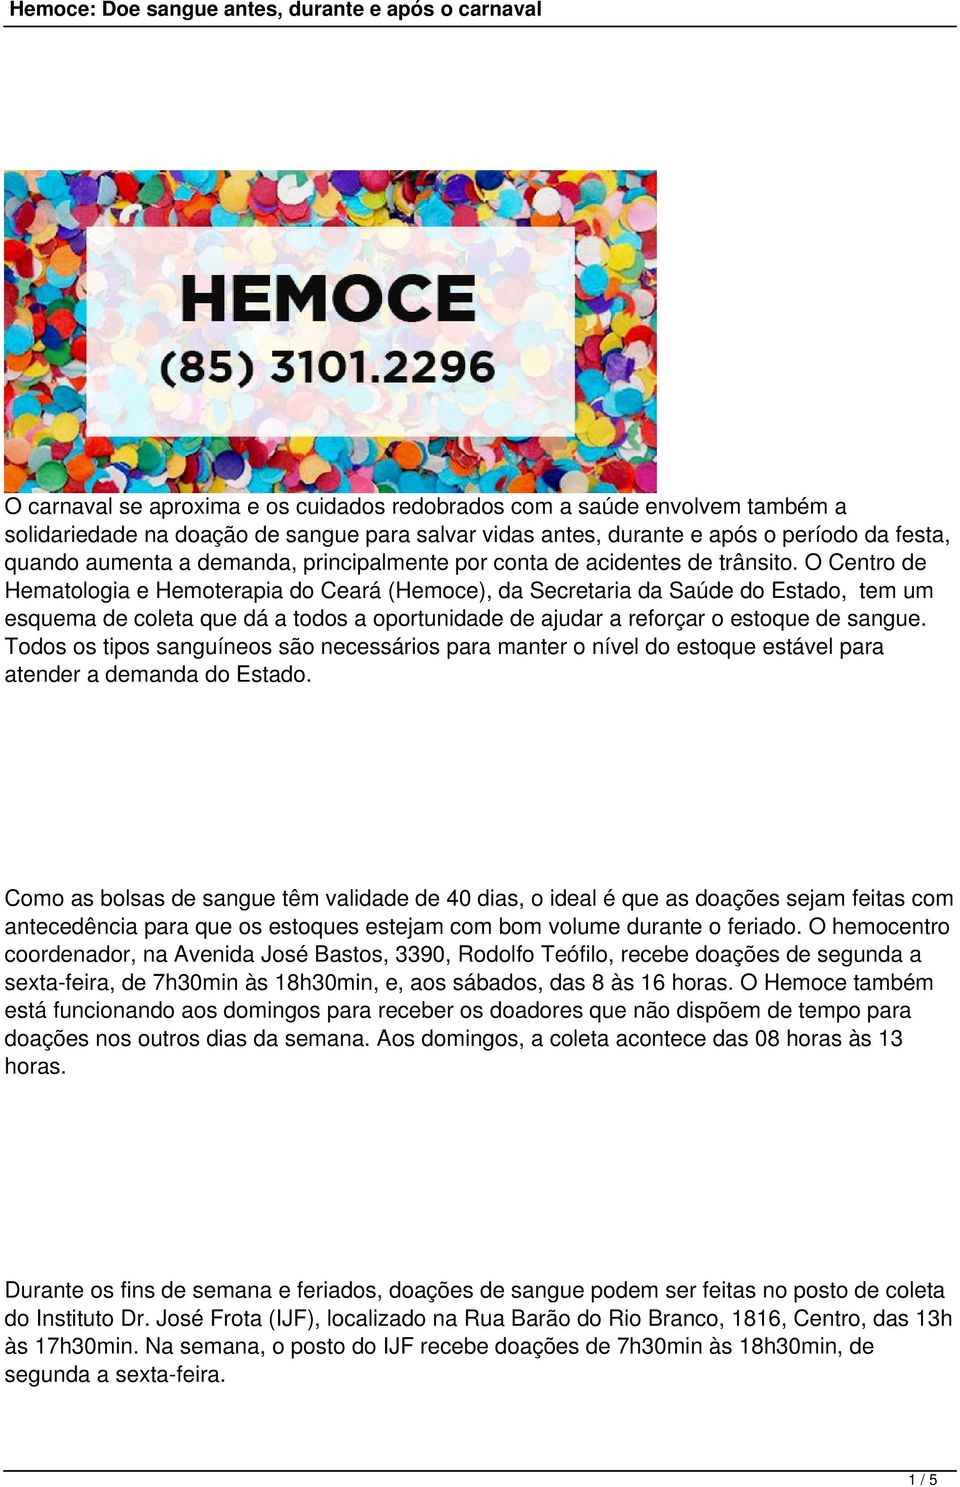 O Centro de Hematologia e Hemoterapia do Ceará (Hemoce), da Secretaria da Saúde do Estado, tem um esquema de coleta que dá a todos a oportunidade de ajudar a reforçar o estoque de sangue.